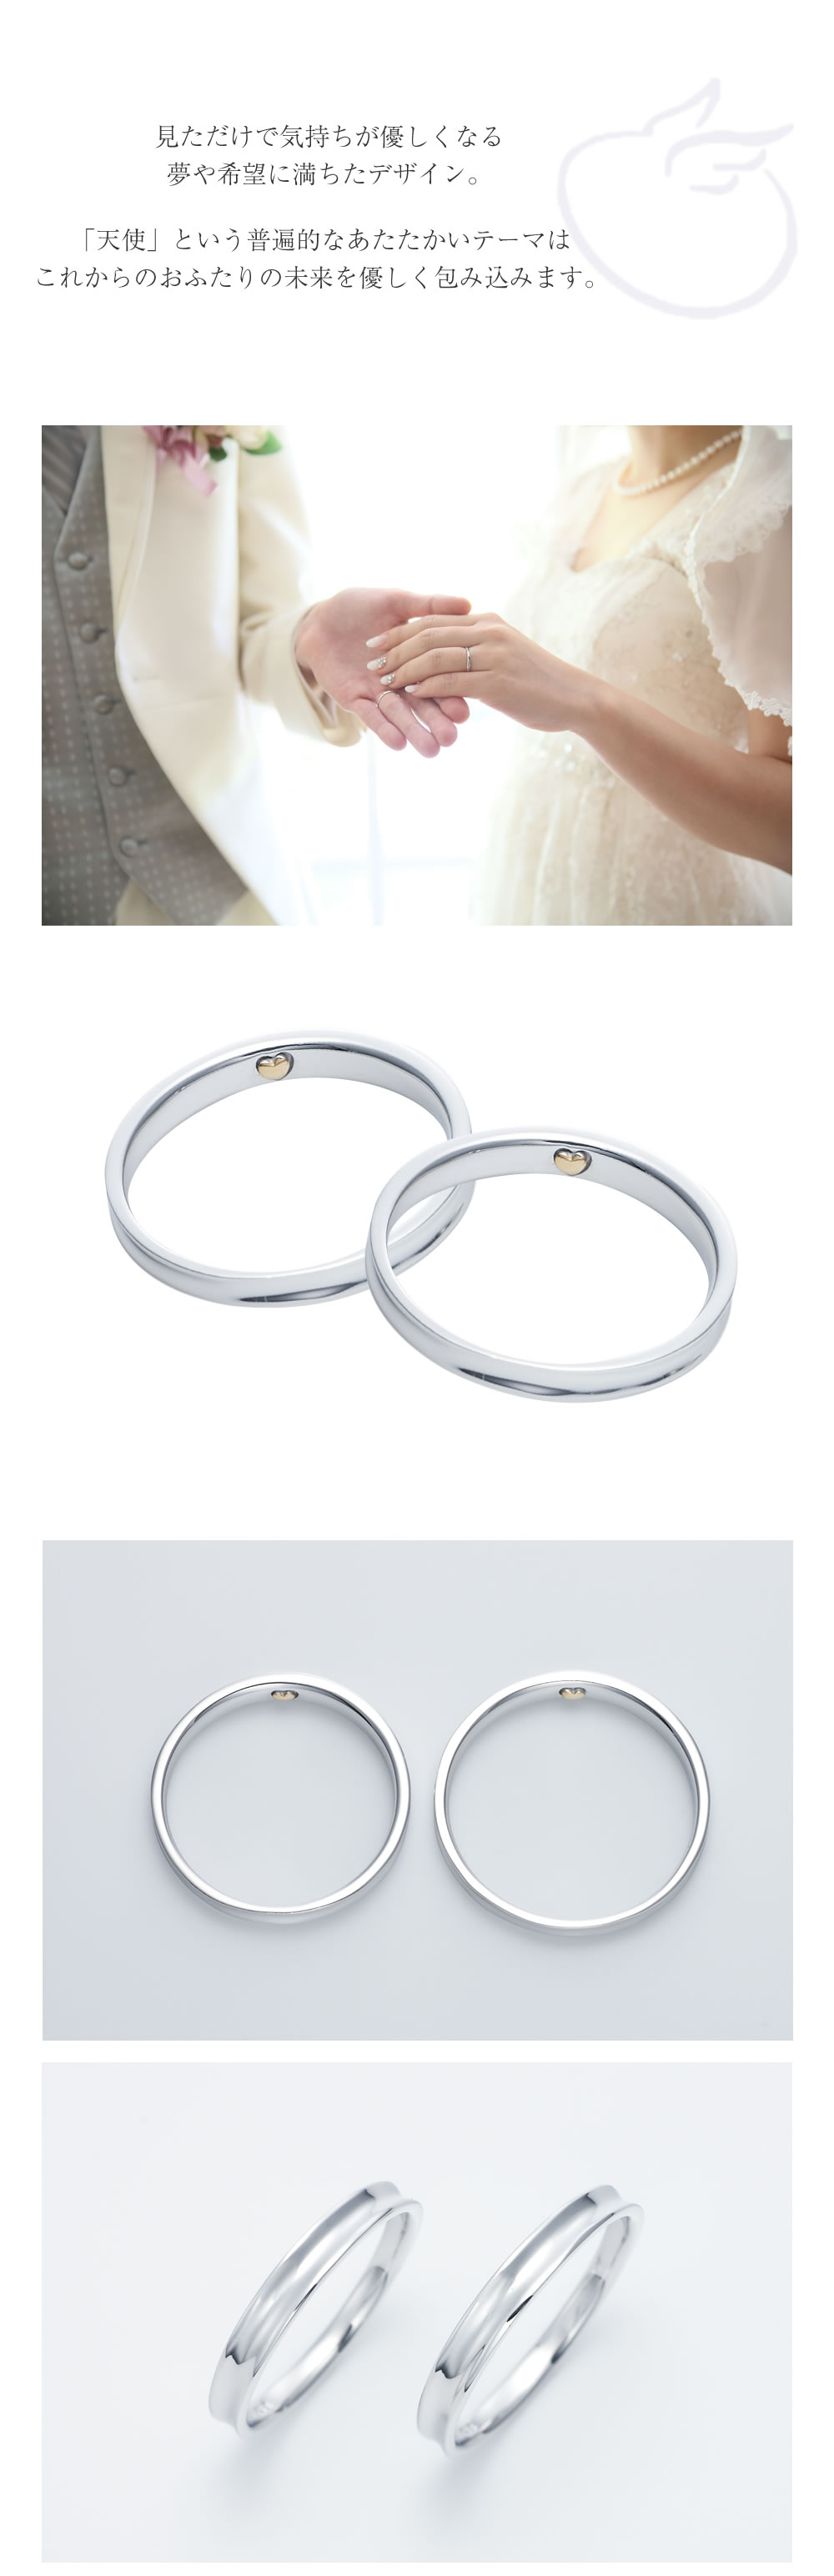 【結婚指輪】天使の卵のディテールとコンセプト